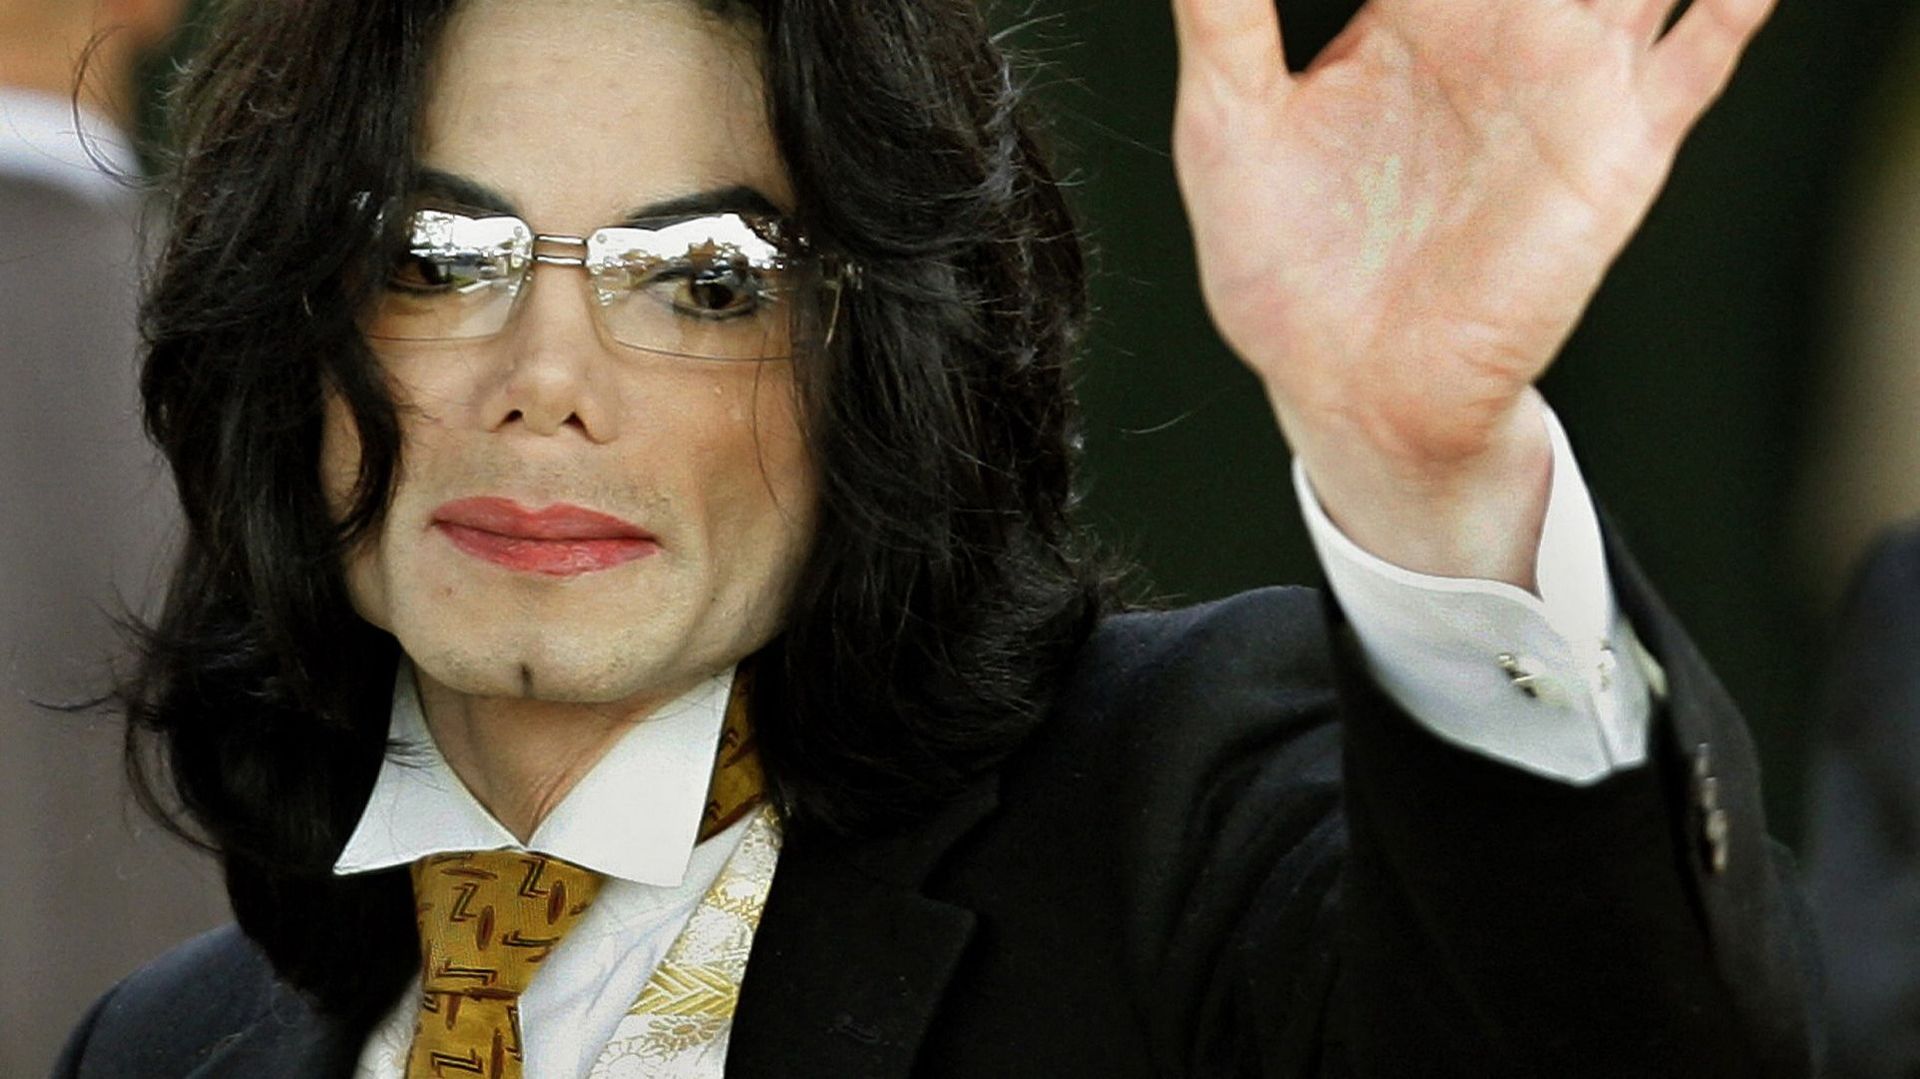 Trois chansons de Michael Jackson, au centre d’une polémique de longue date sur la véritable identité de leur interprète, ont été retirées de plateformes de streaming